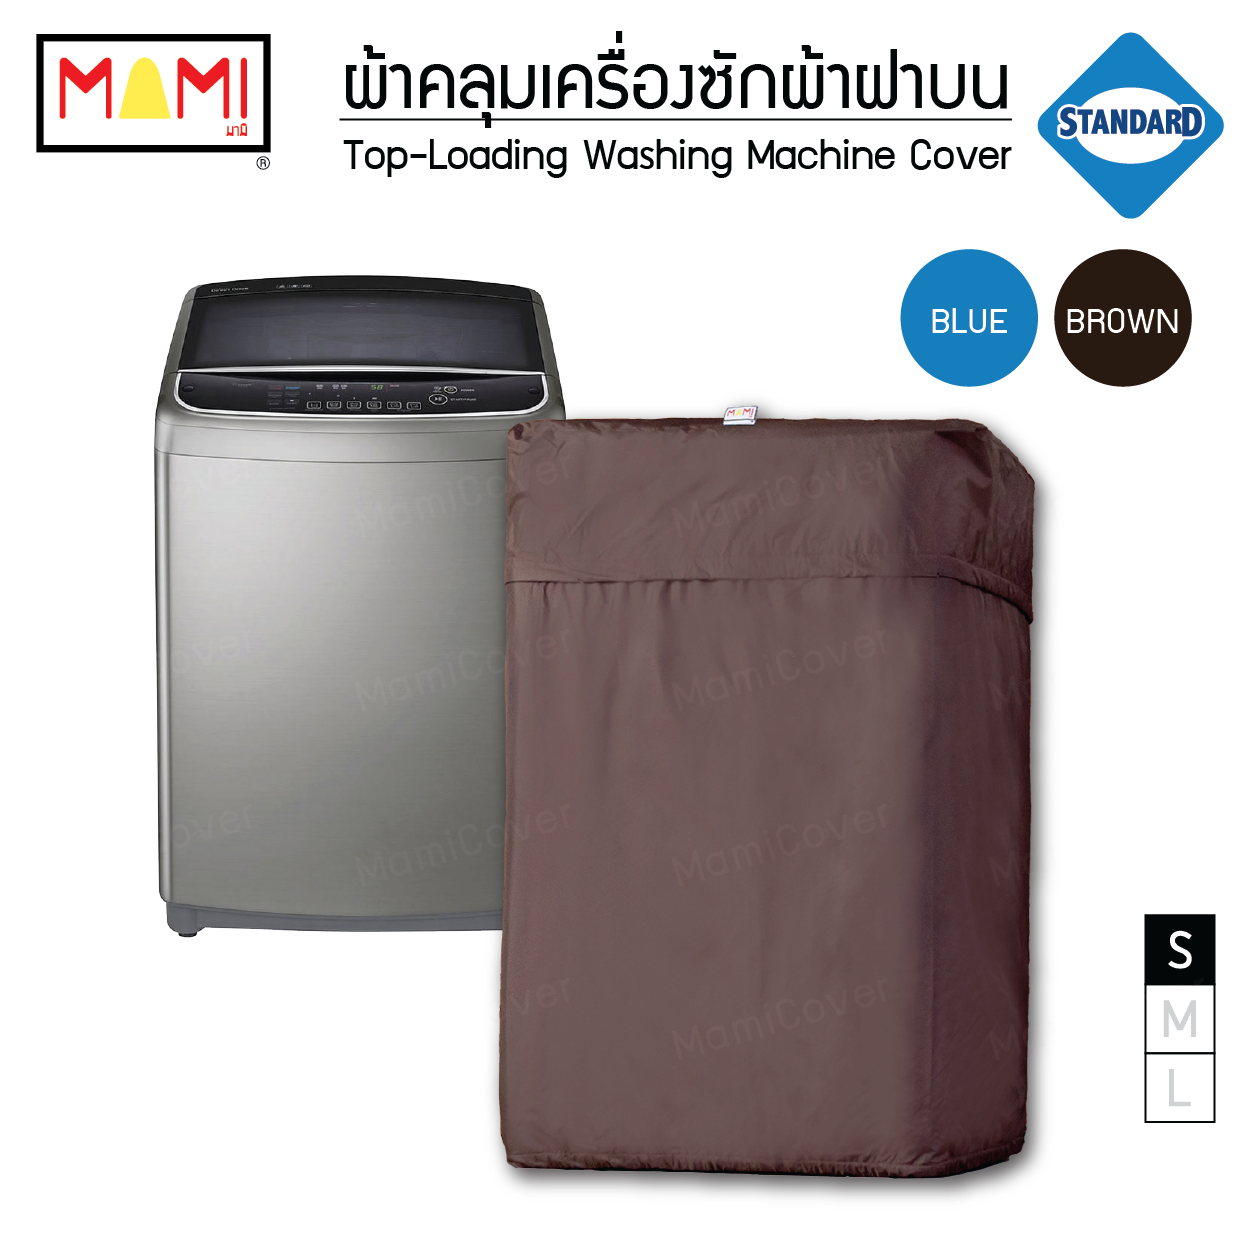 ผ้าคลุมเครื่องซักผ้าฝาบน กันฝุ่น กันแดด กันฝนสาด มีช่องร้อยท่อน้ำ+สายไฟ Mami รุ่น Standard  สีน้ำตาล